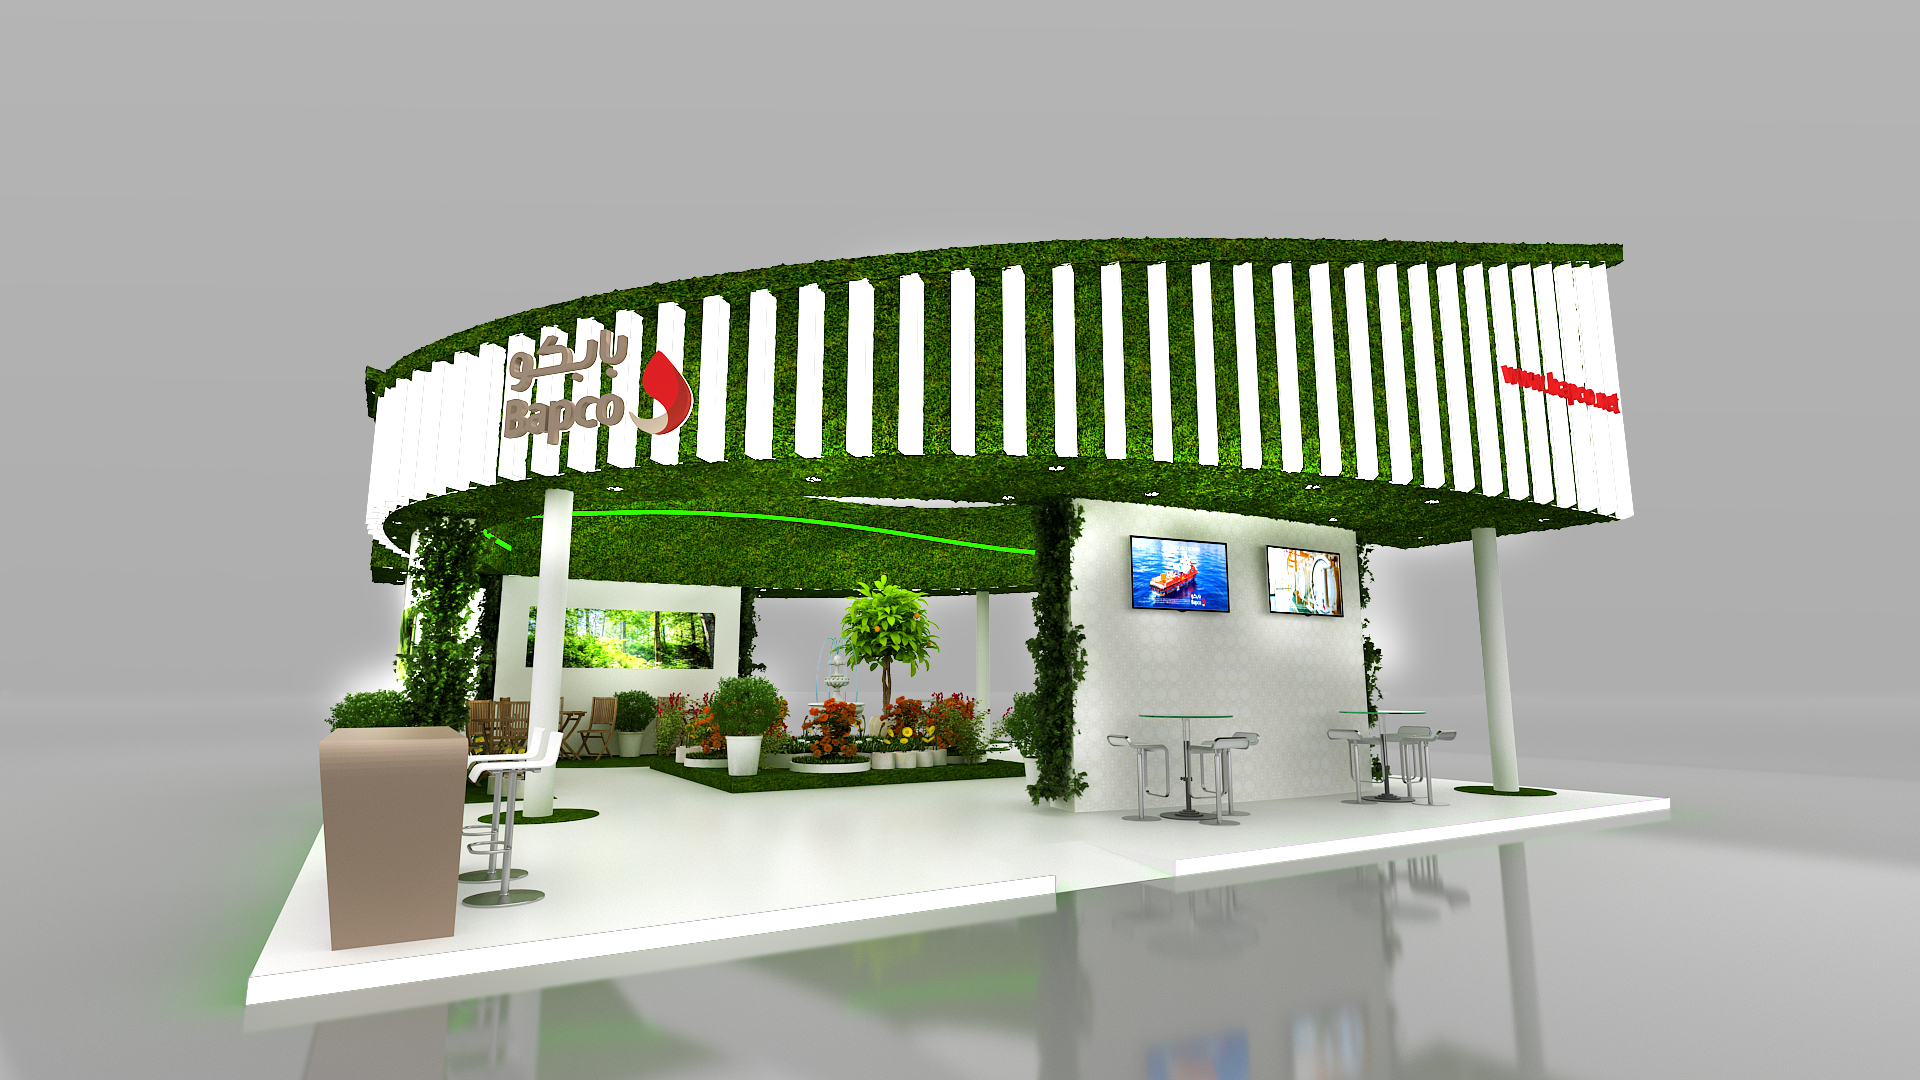 Conceptual Garden Show Design for - BAPCO-1